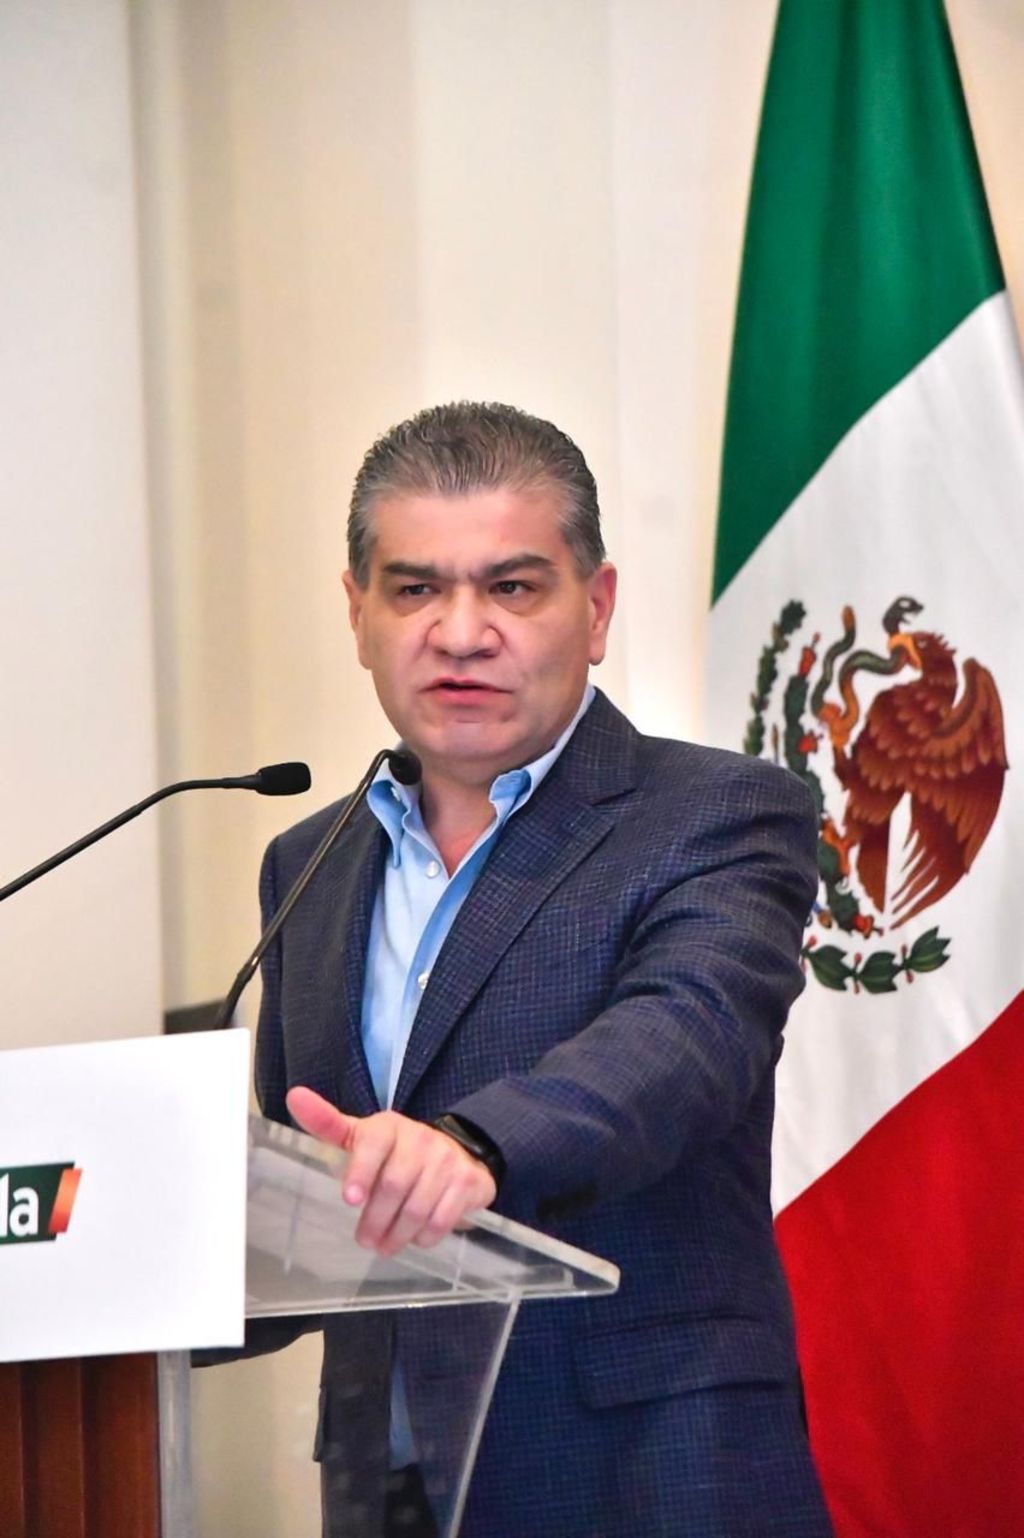 Coahuila destaca en materia de seguridad y conserva su positiva percepción ciudadana, dijo el gobernador Miguel Riquelme.